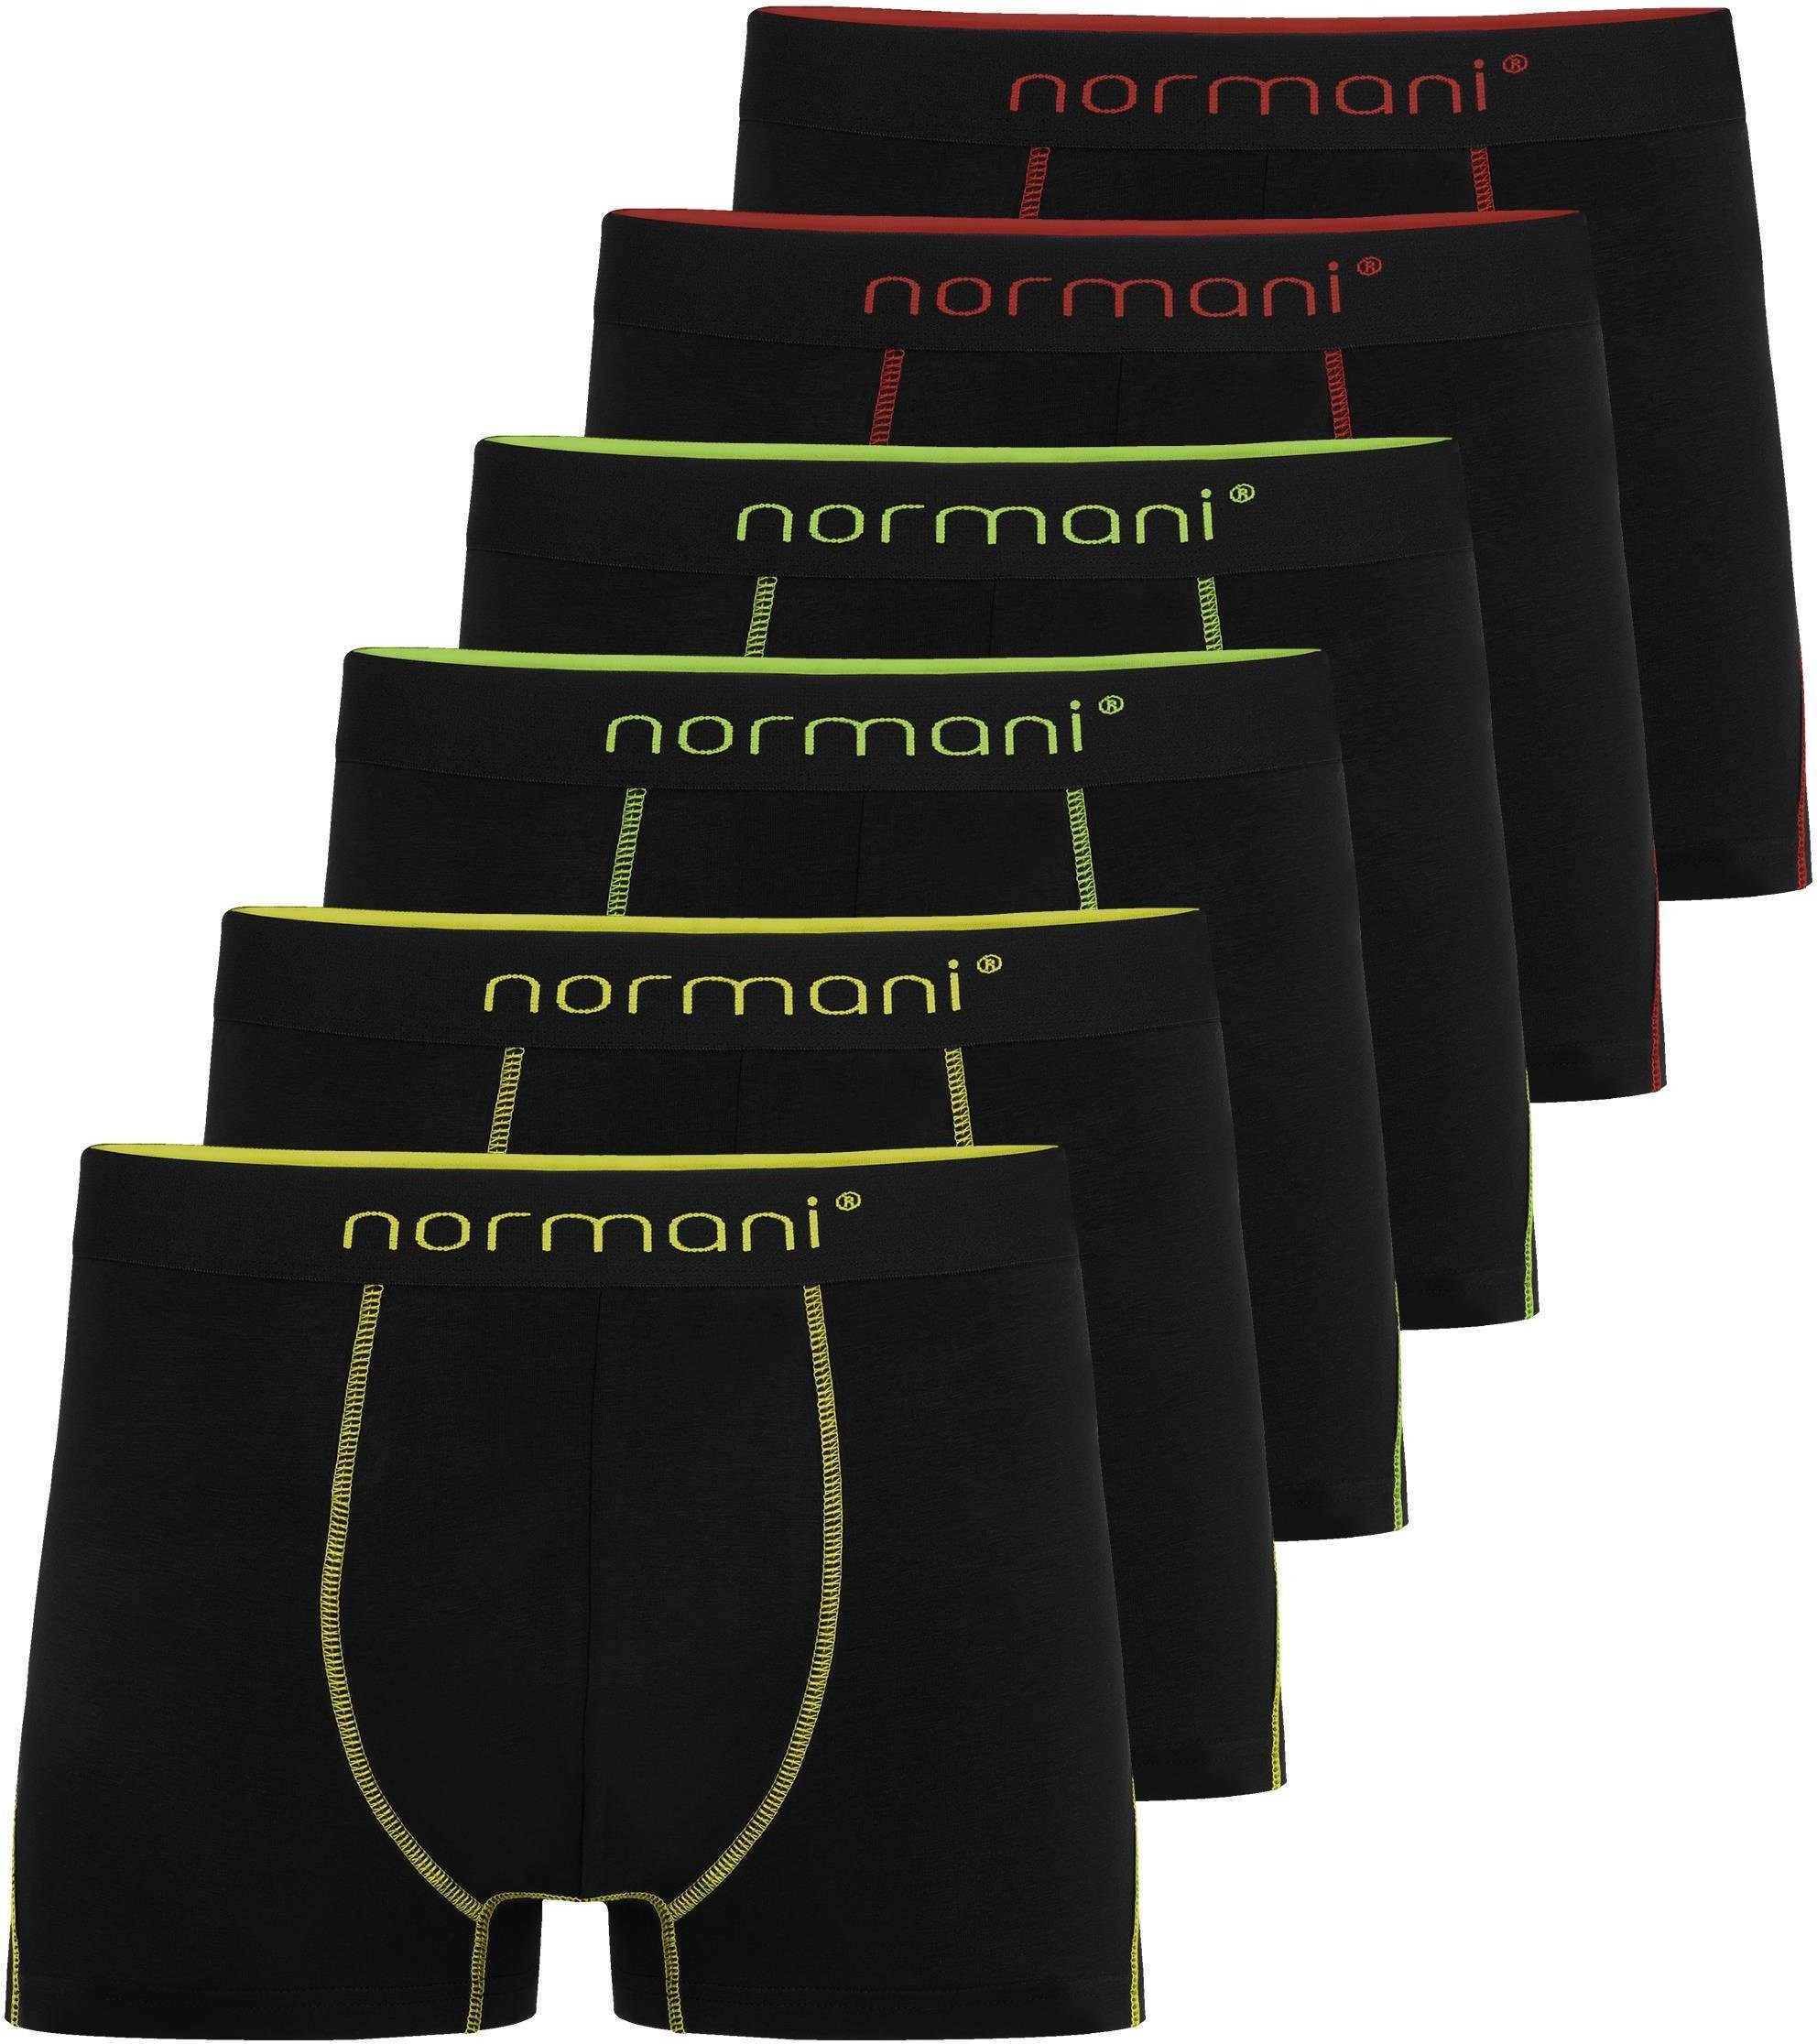 6 Baumwolle Unterhose Herren Baumwoll-Boxershorts Männer atmungsaktiver Boxershorts normani aus für Gelb/Grün/Rot